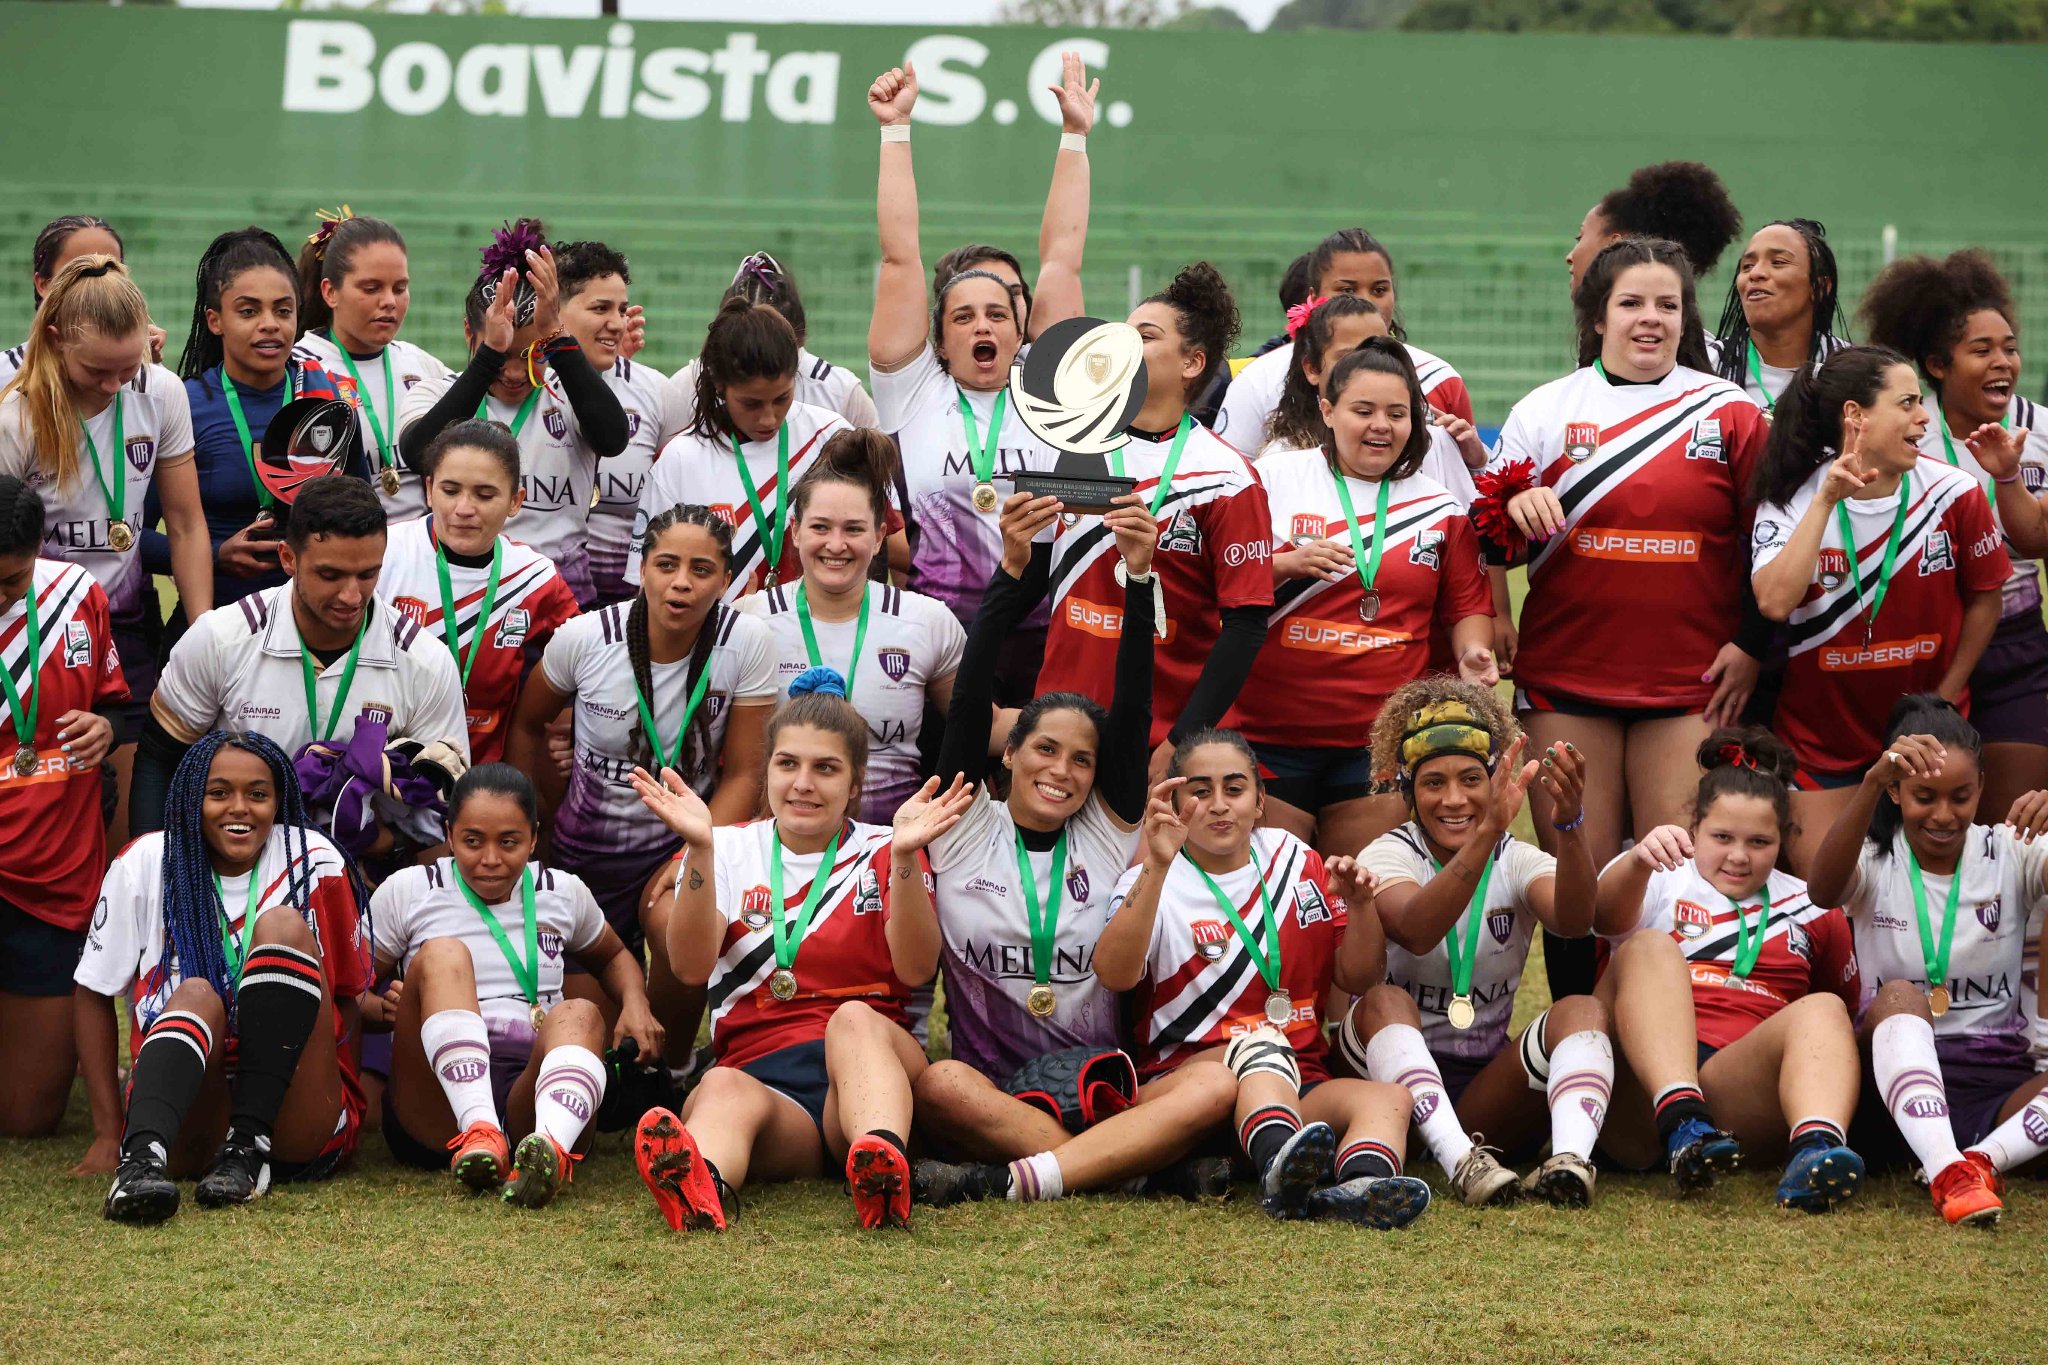 Centro-Oeste e São Paulo celebram títulos no 1º Campeonato Brasileiro de Rugby XV feminino